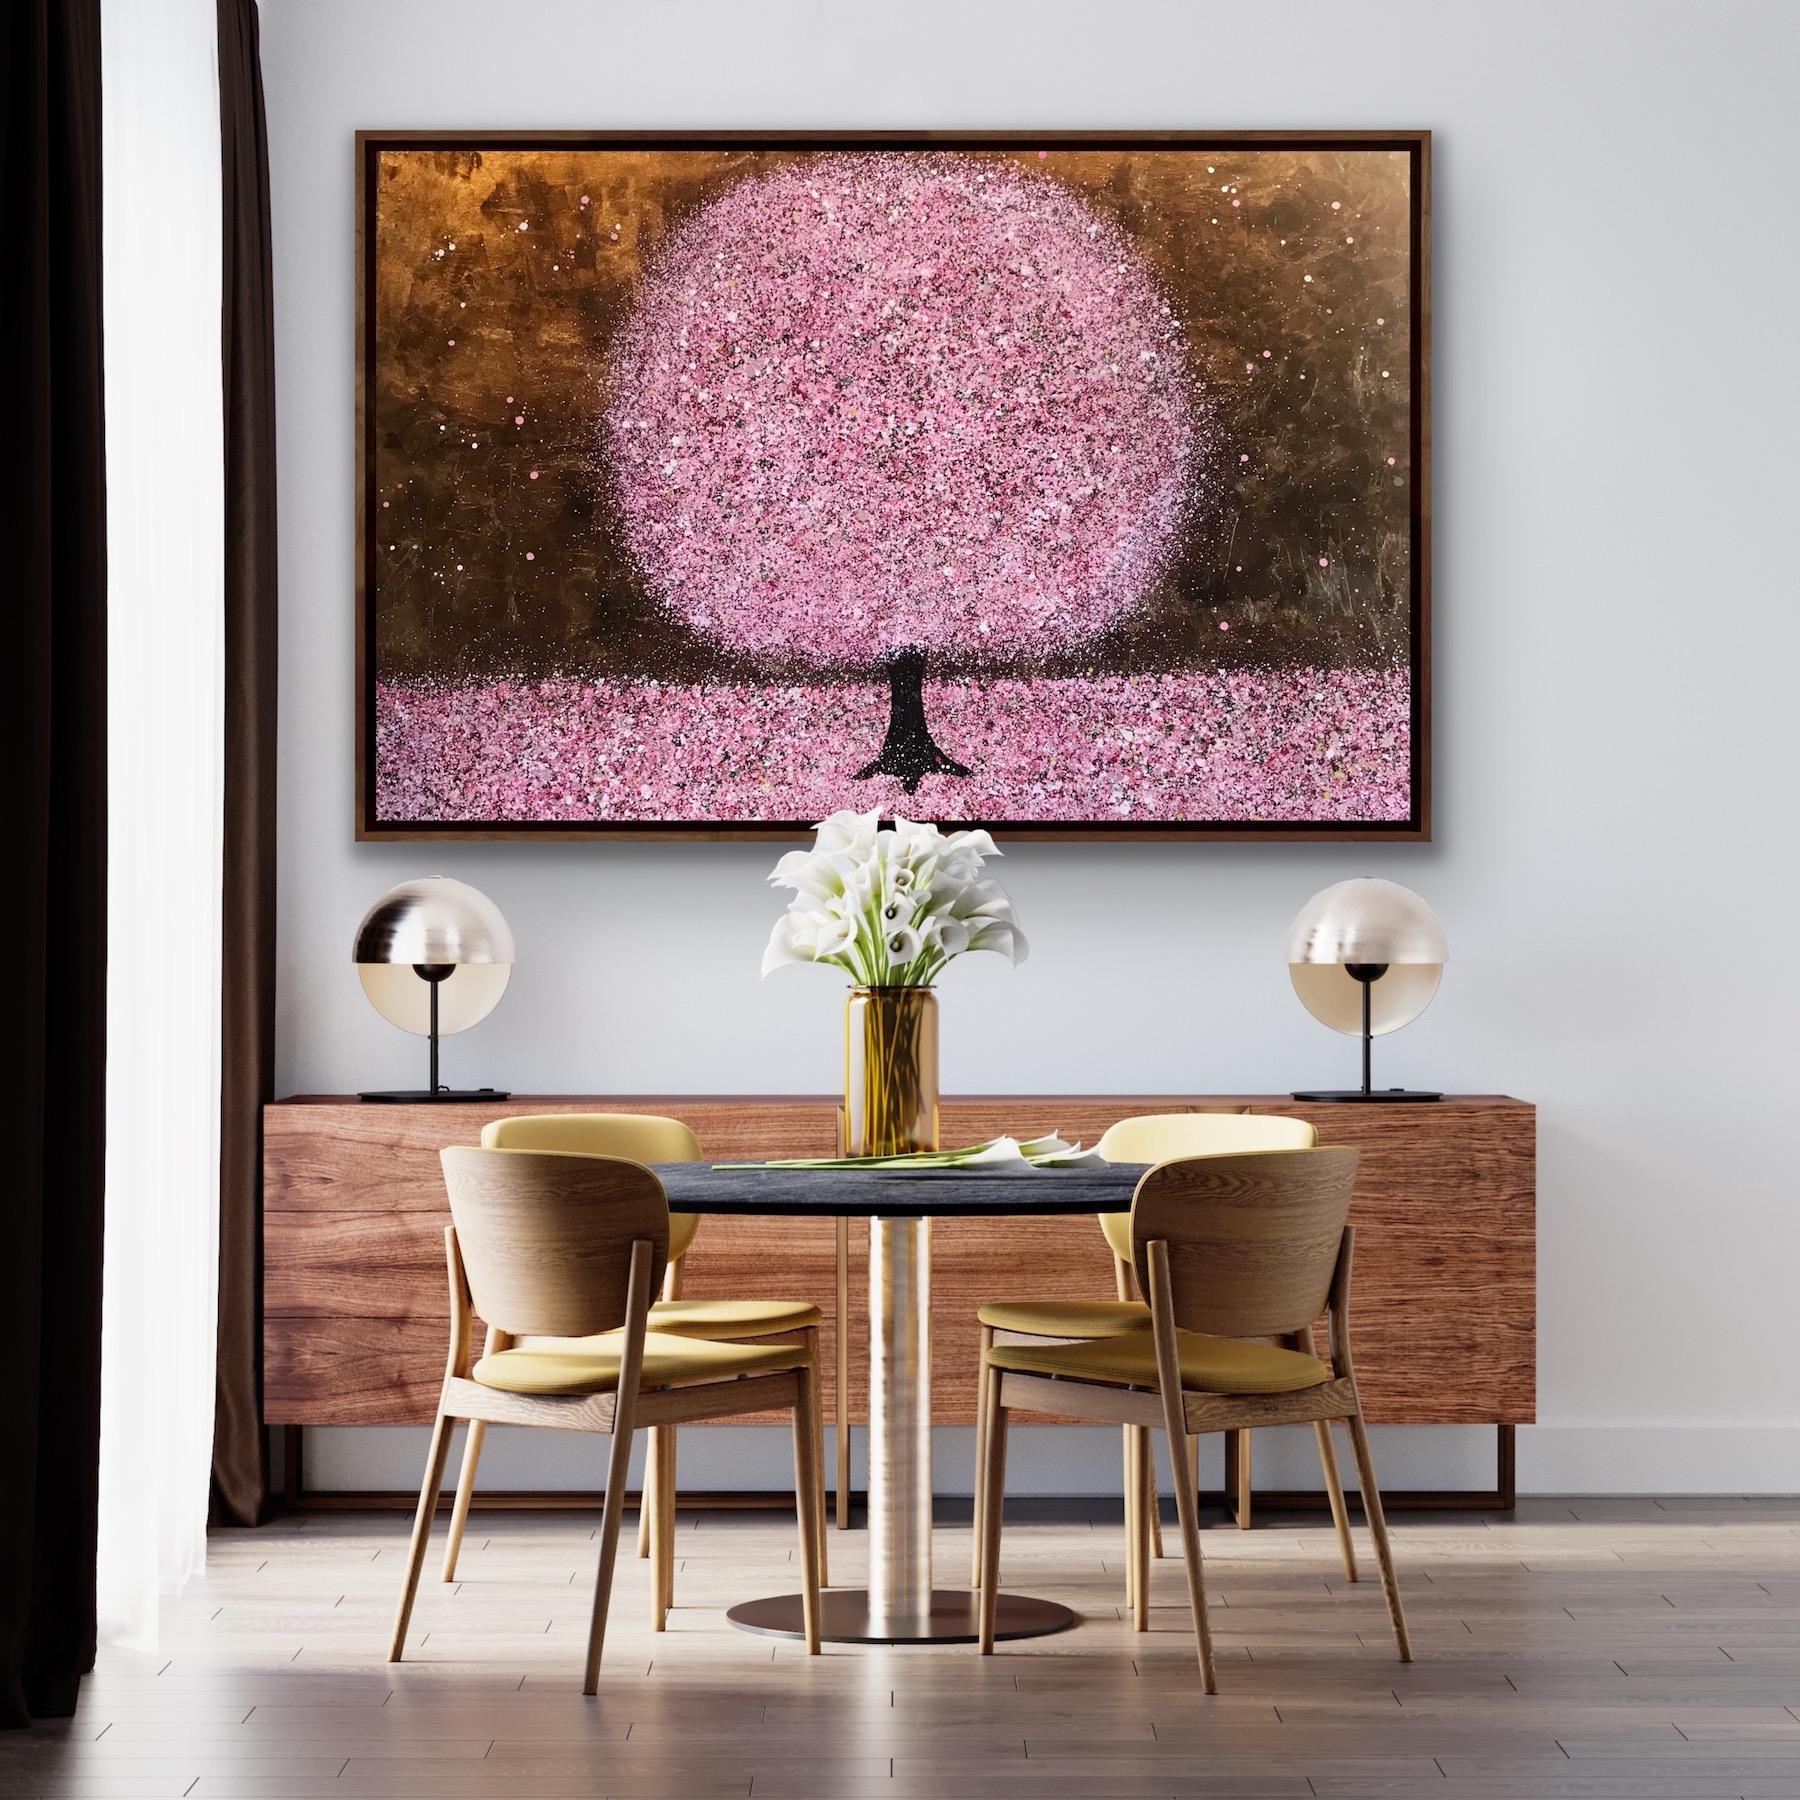 Blossoming in Spring, Goldbaumkunst, Rosa Kirschblütenblüten-Landschaftsgemälde – Painting von Nicky Chubb